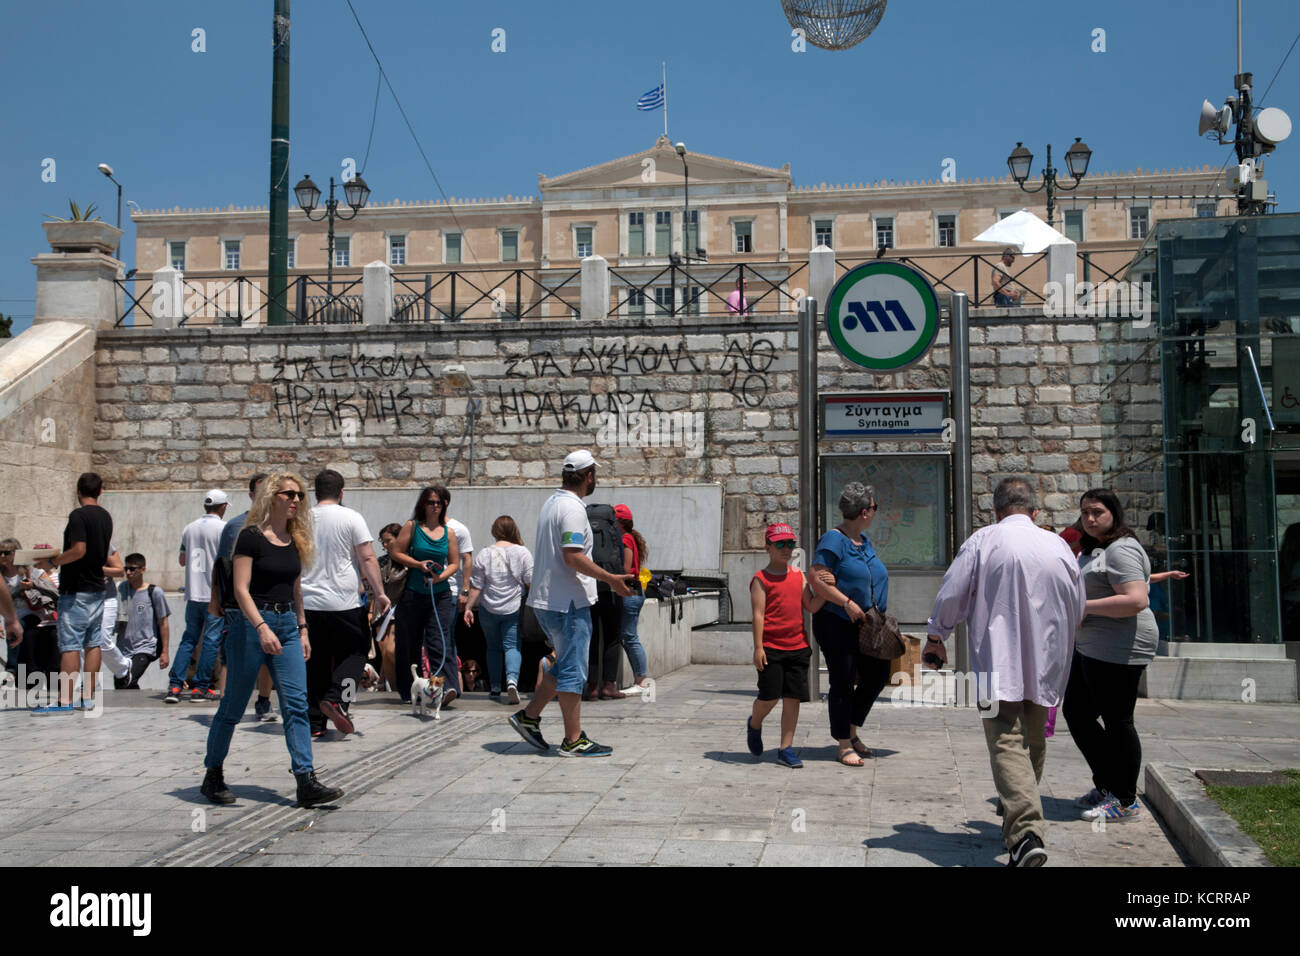 La Place Syntagma d'Athènes Grèce Entrée Métro Banque D'Images